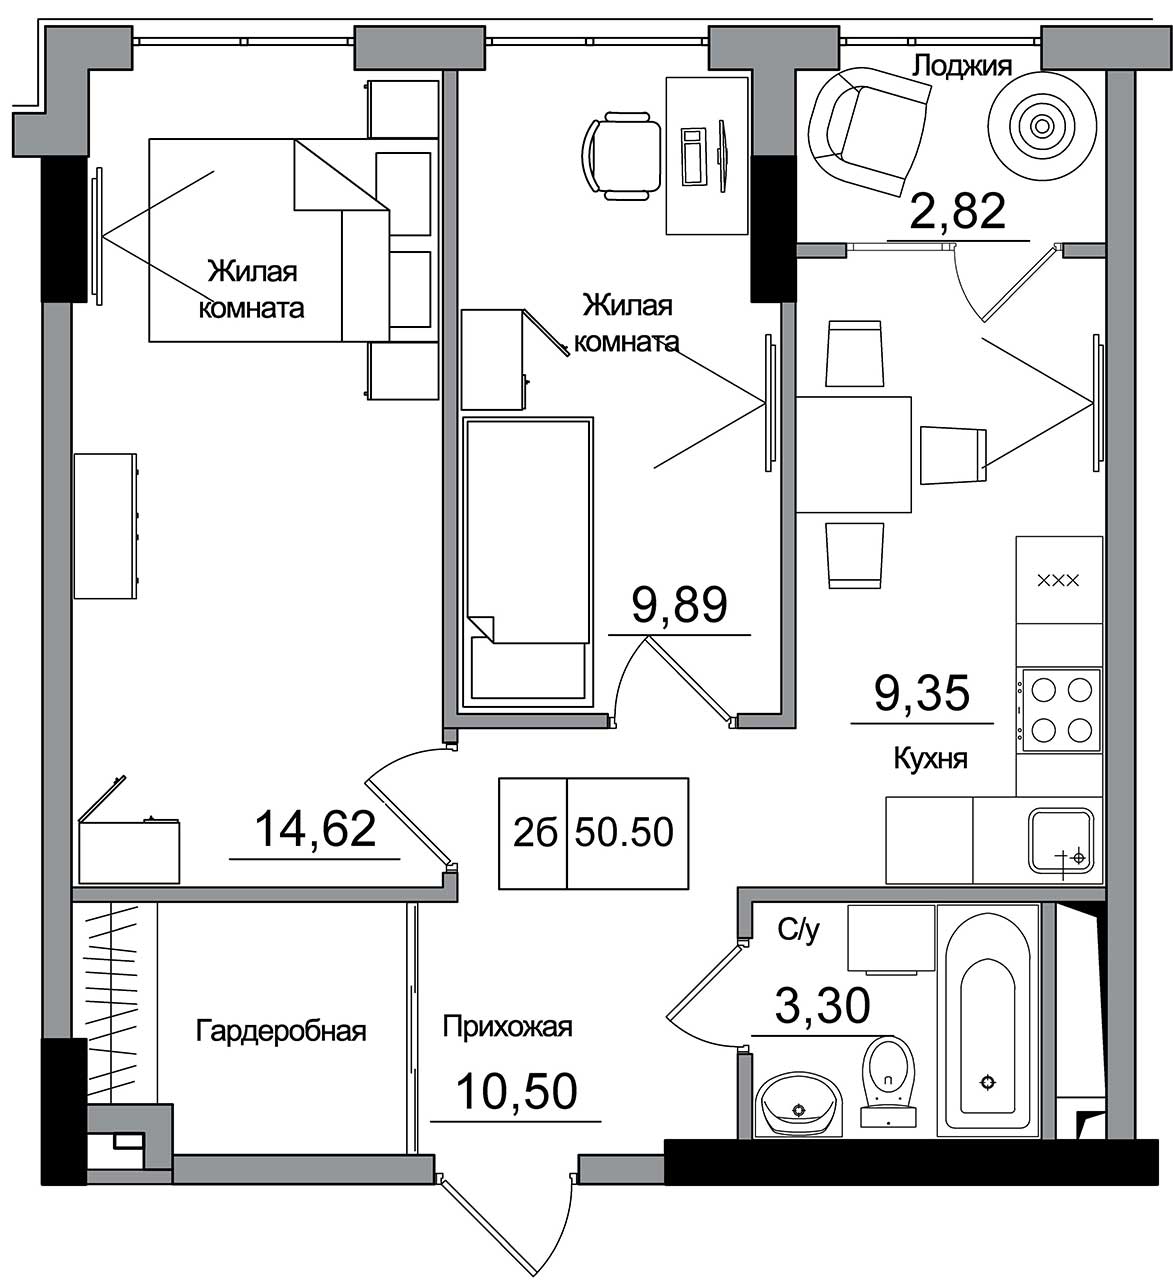 Планировка 2-к квартира площей 50.5м2, AB-16-01/00007.